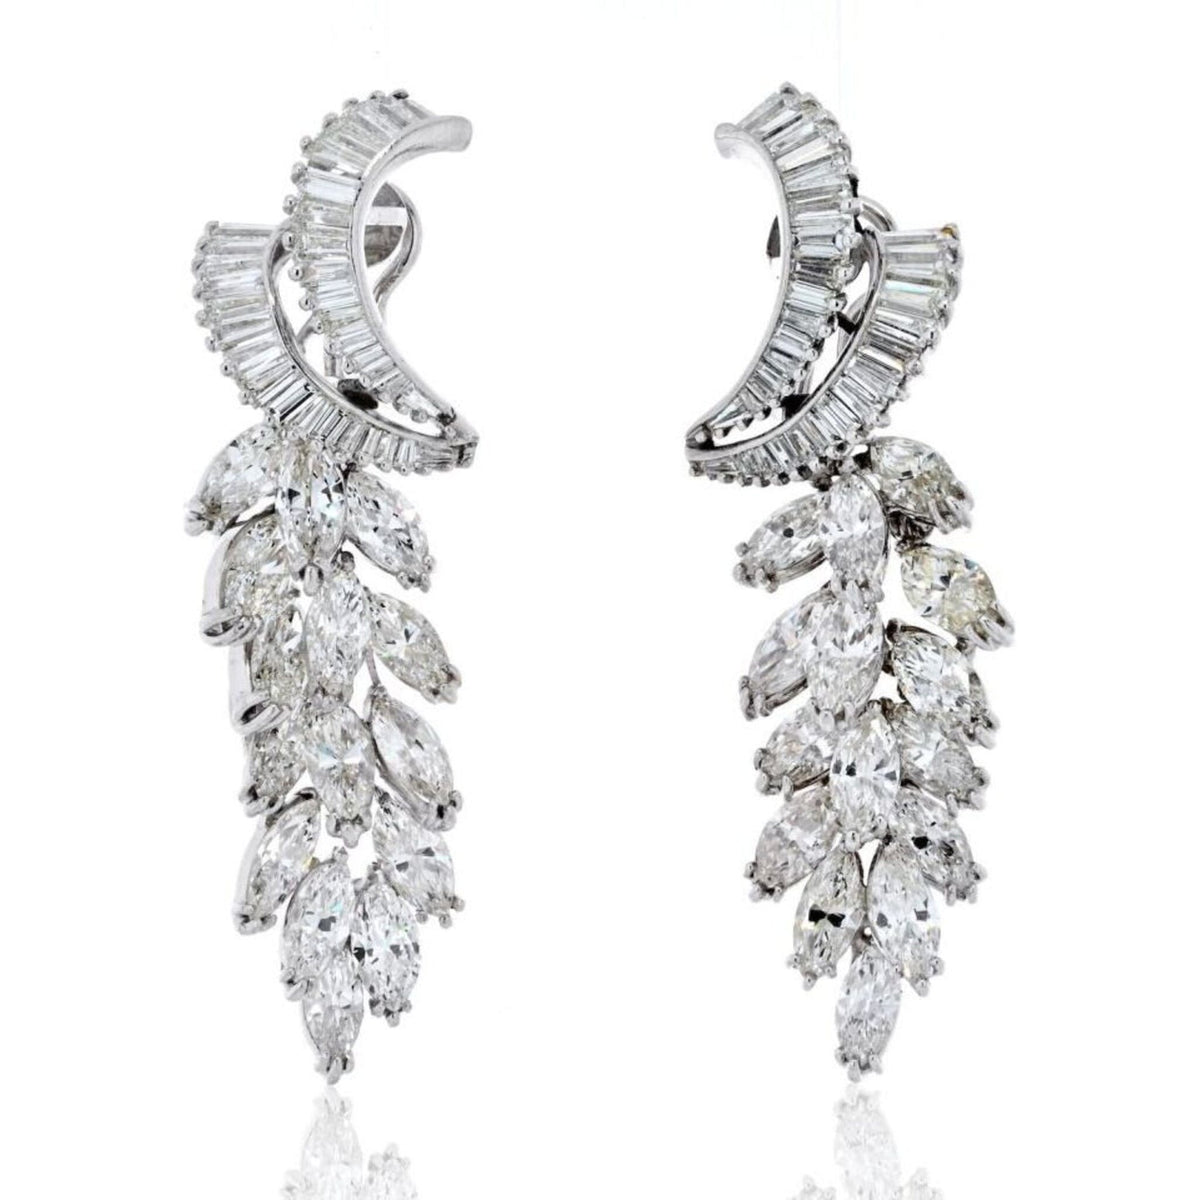 Exquisite Platinum Earrings